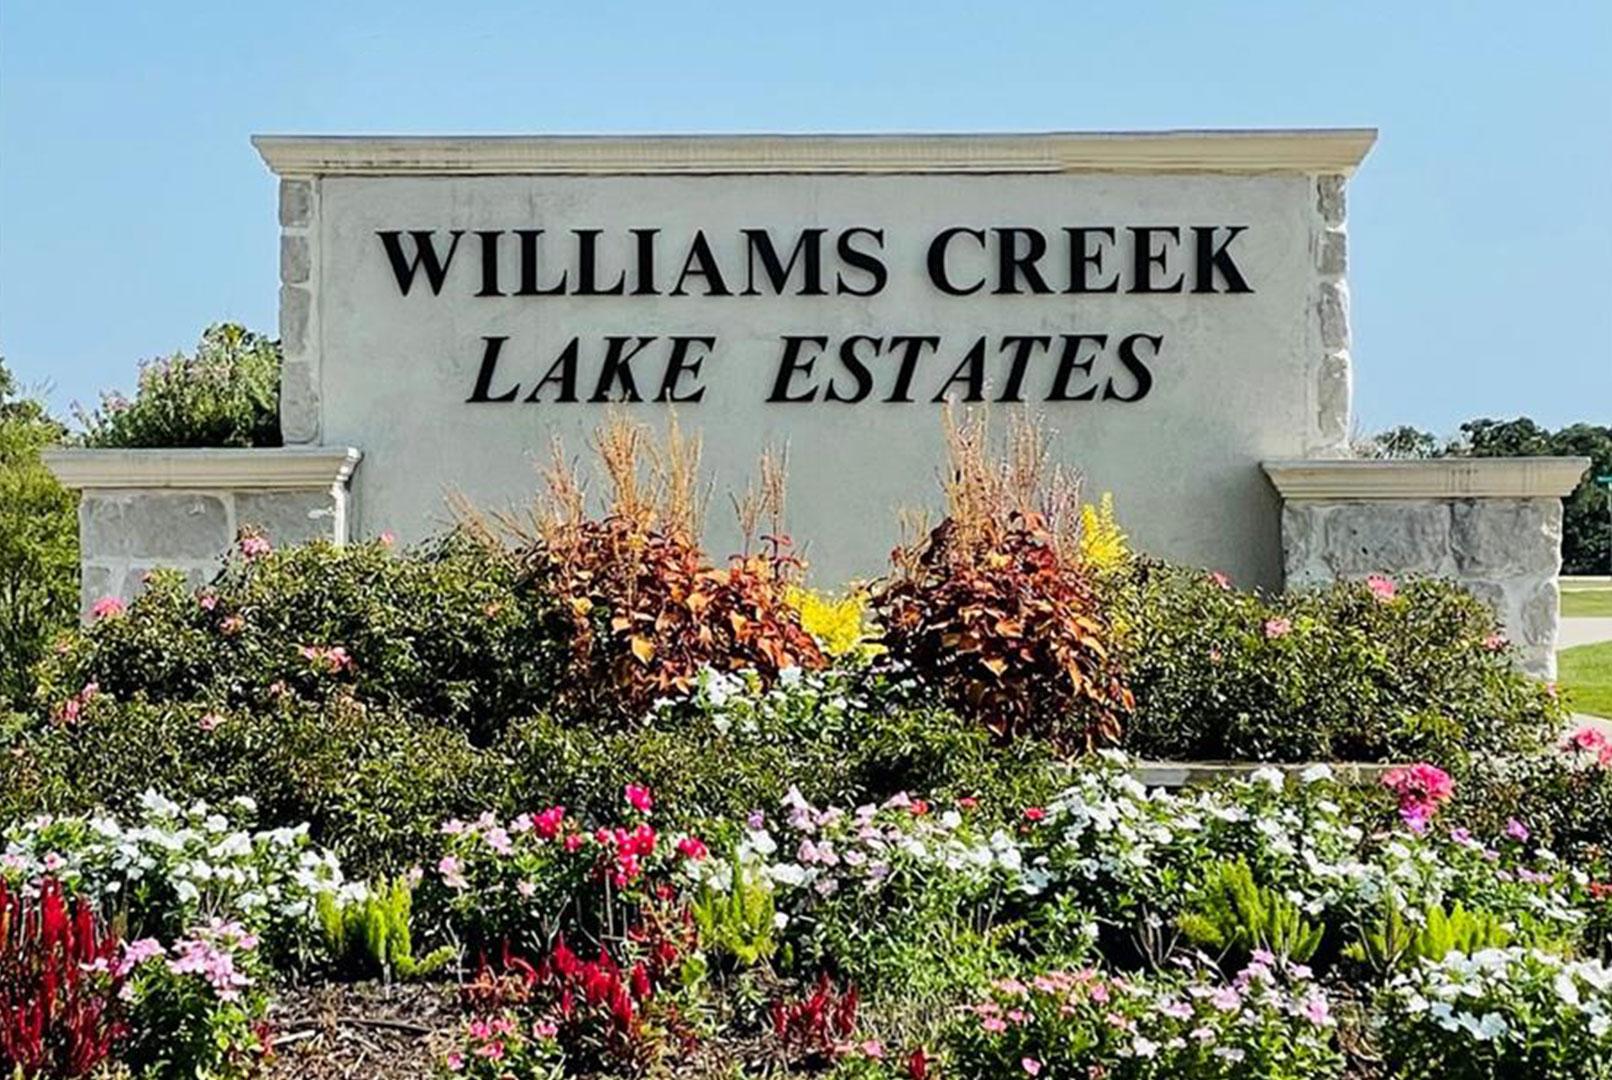 Williams Creek Lake Estates